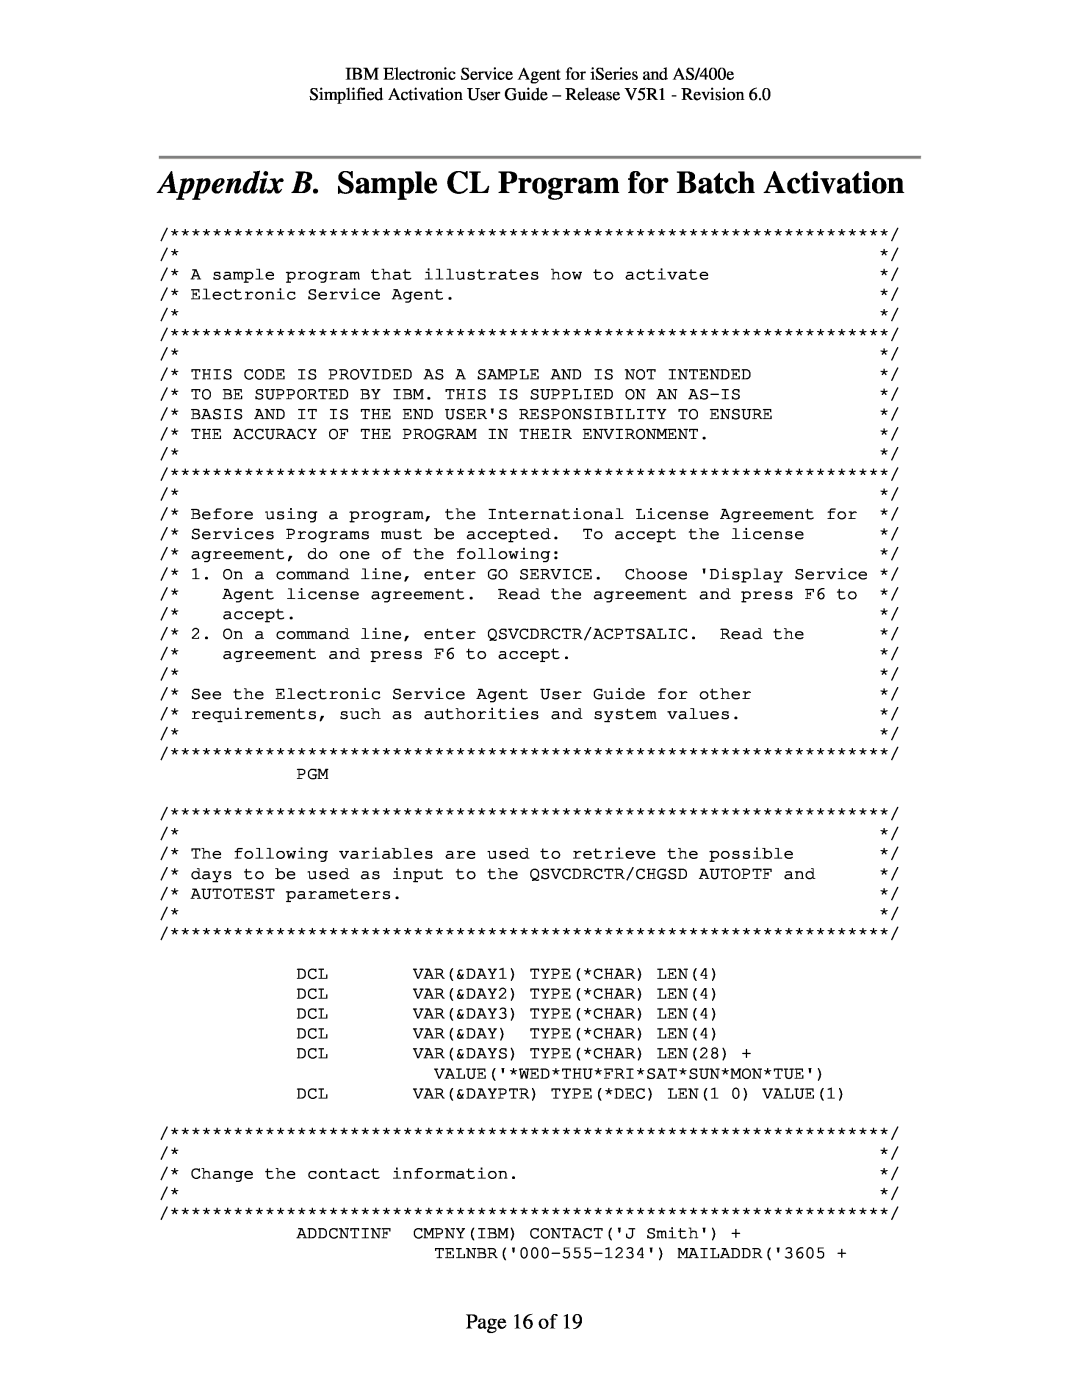 IBM V5R1, iSeries, PTF SF67624 manual Page 16 of 